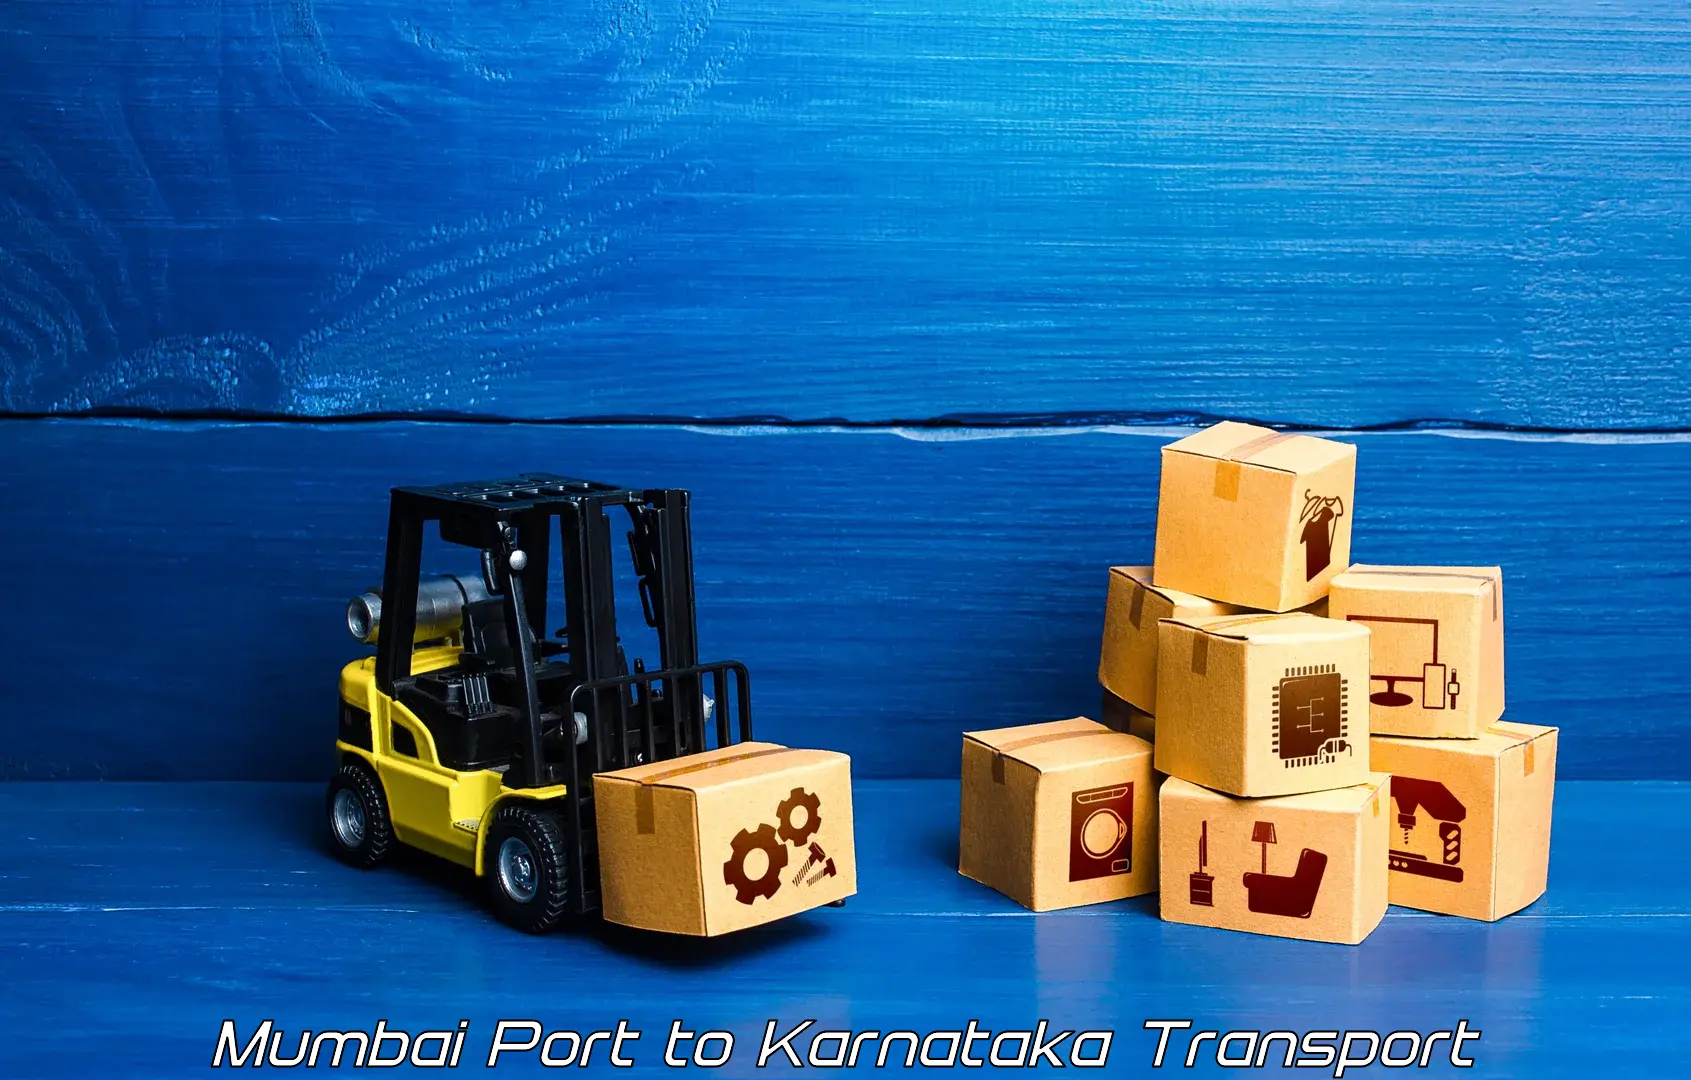 Container transport service Mumbai Port to Kalaburagi